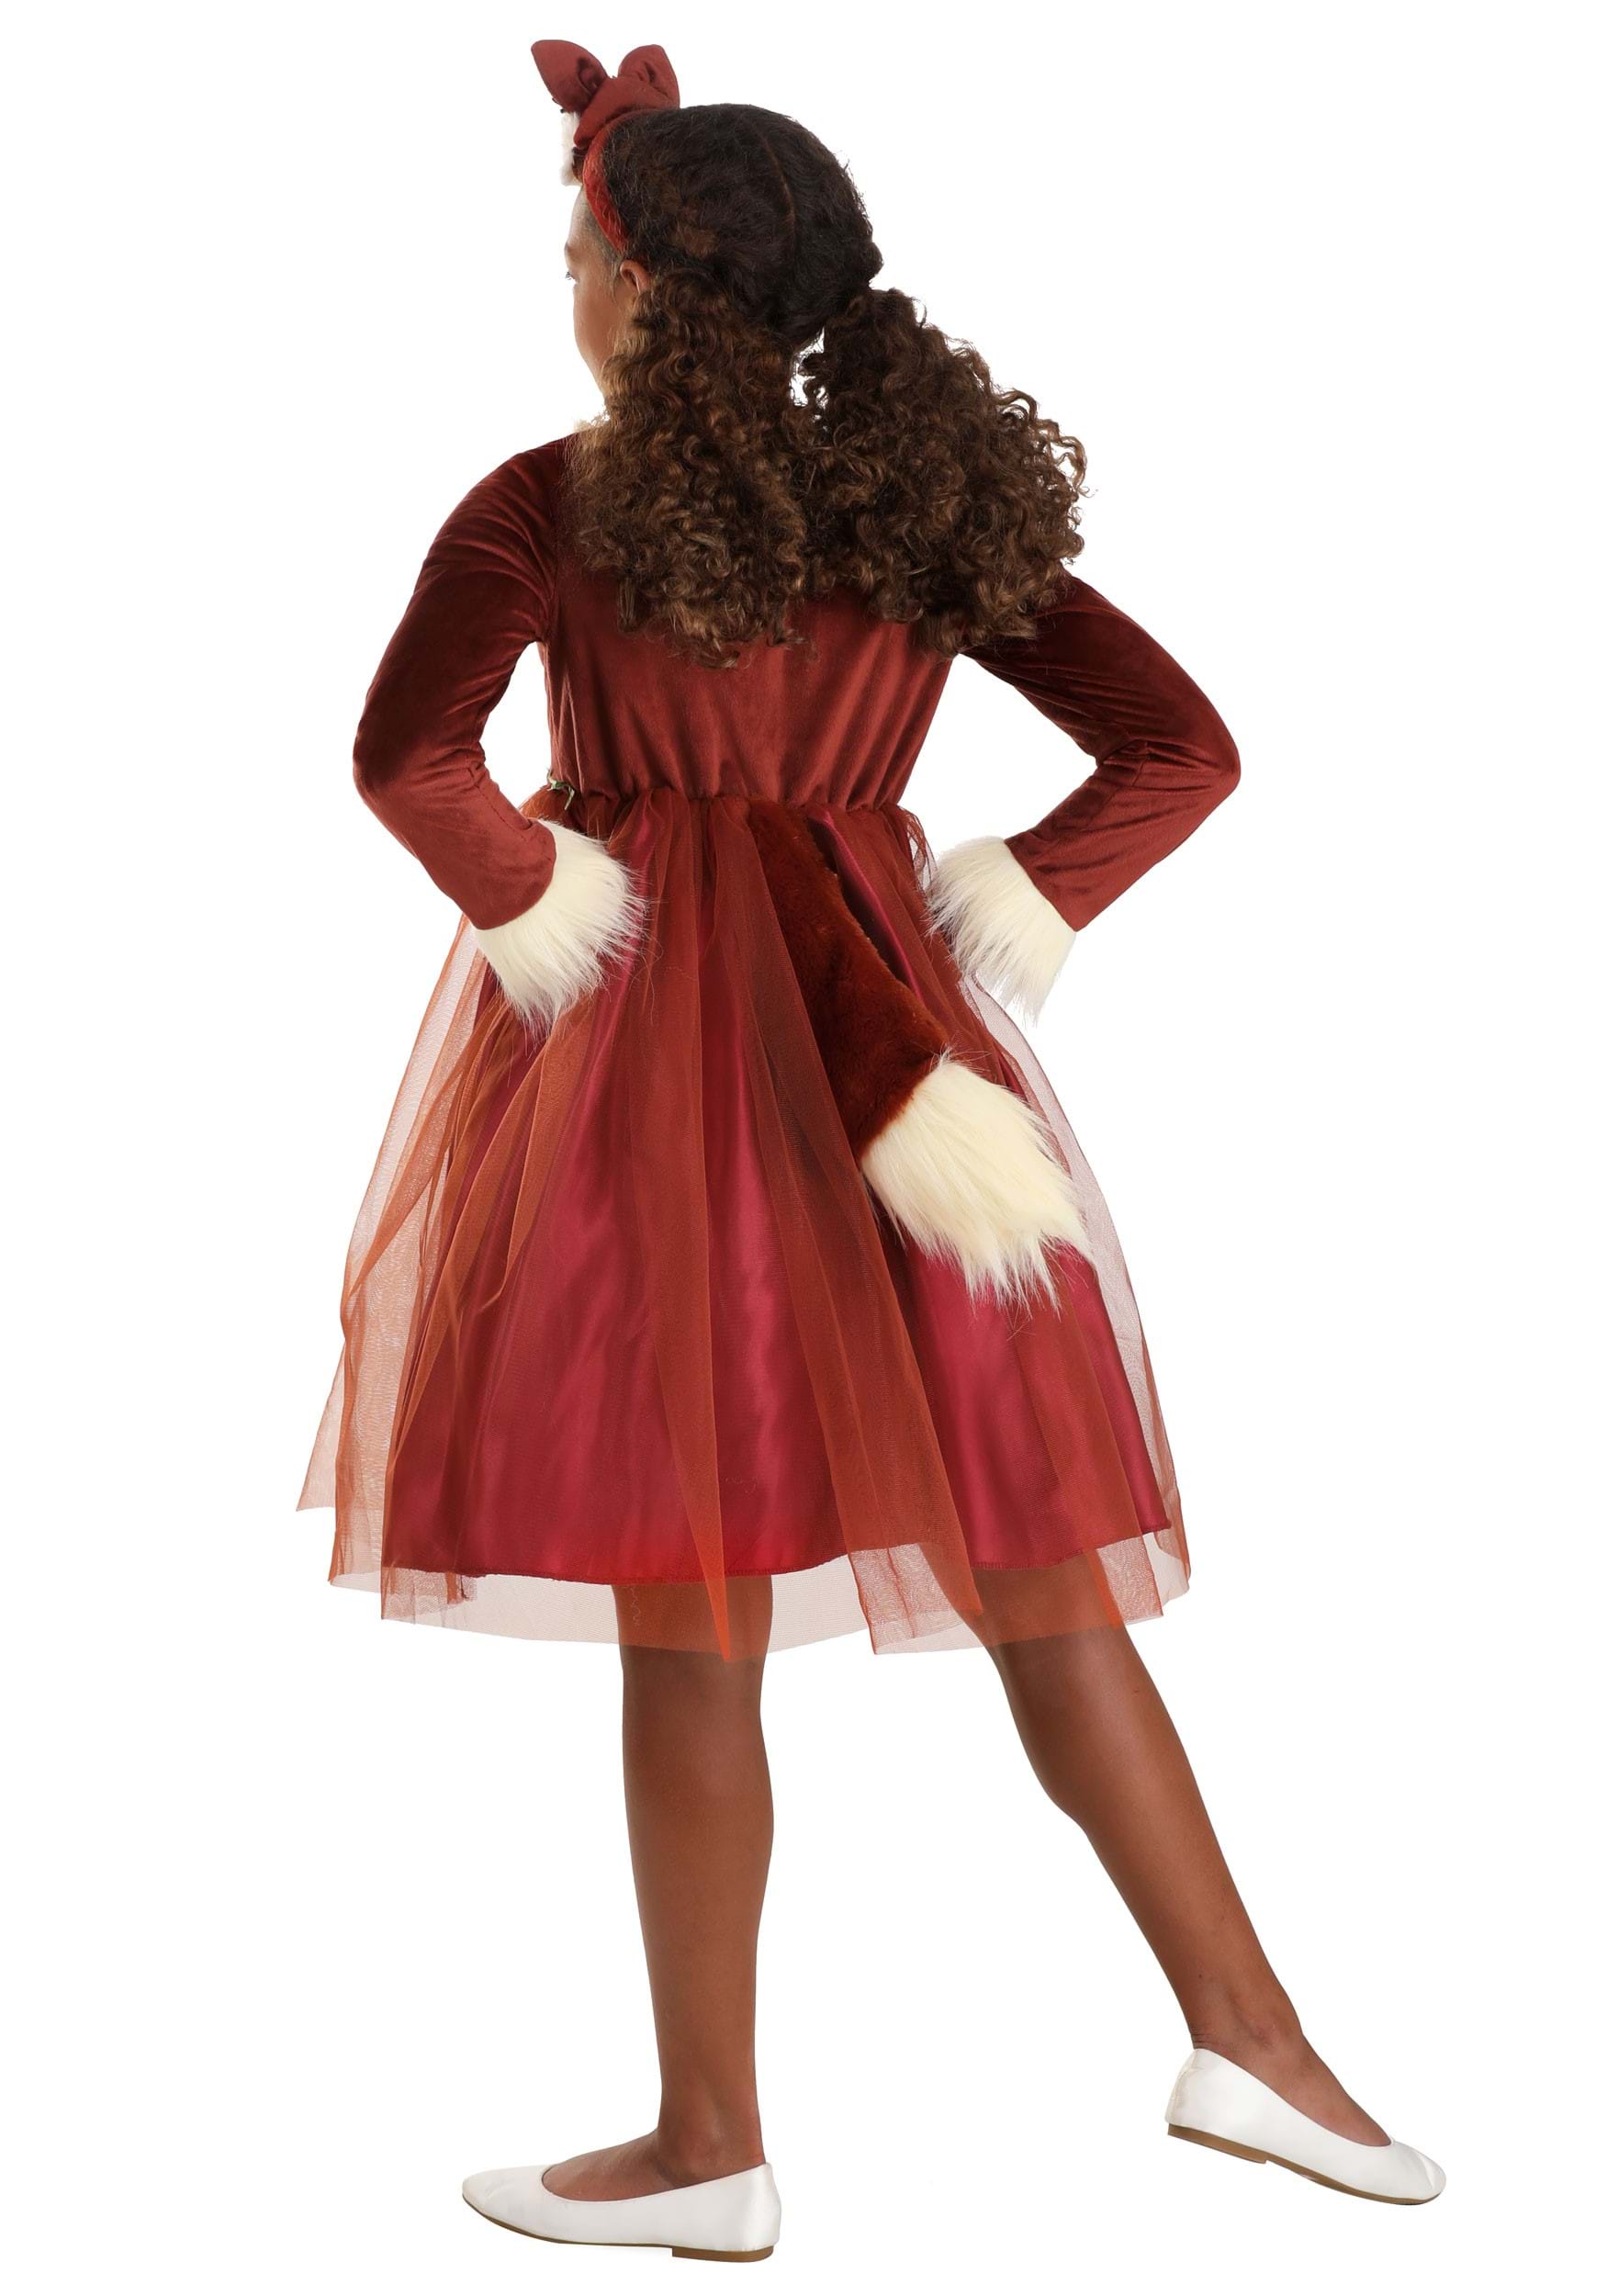 Fox Dress Costume For Girls